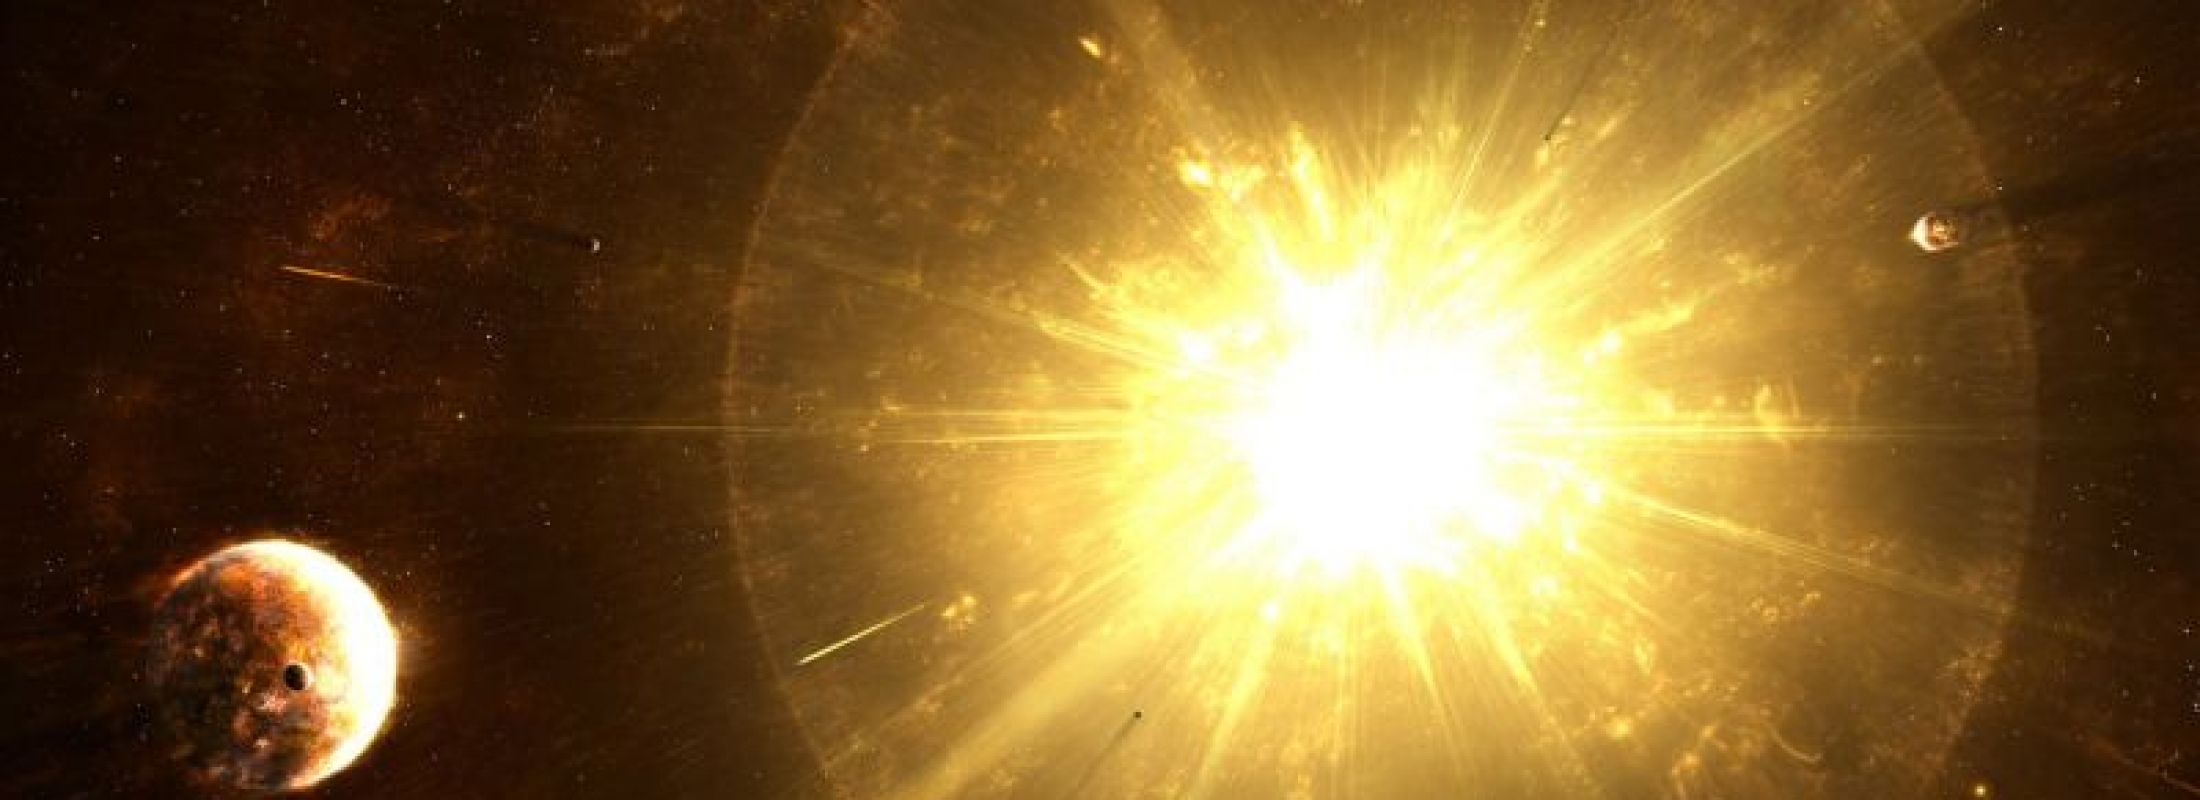 Великое Центральное Солнце и структура нашей Вселенной